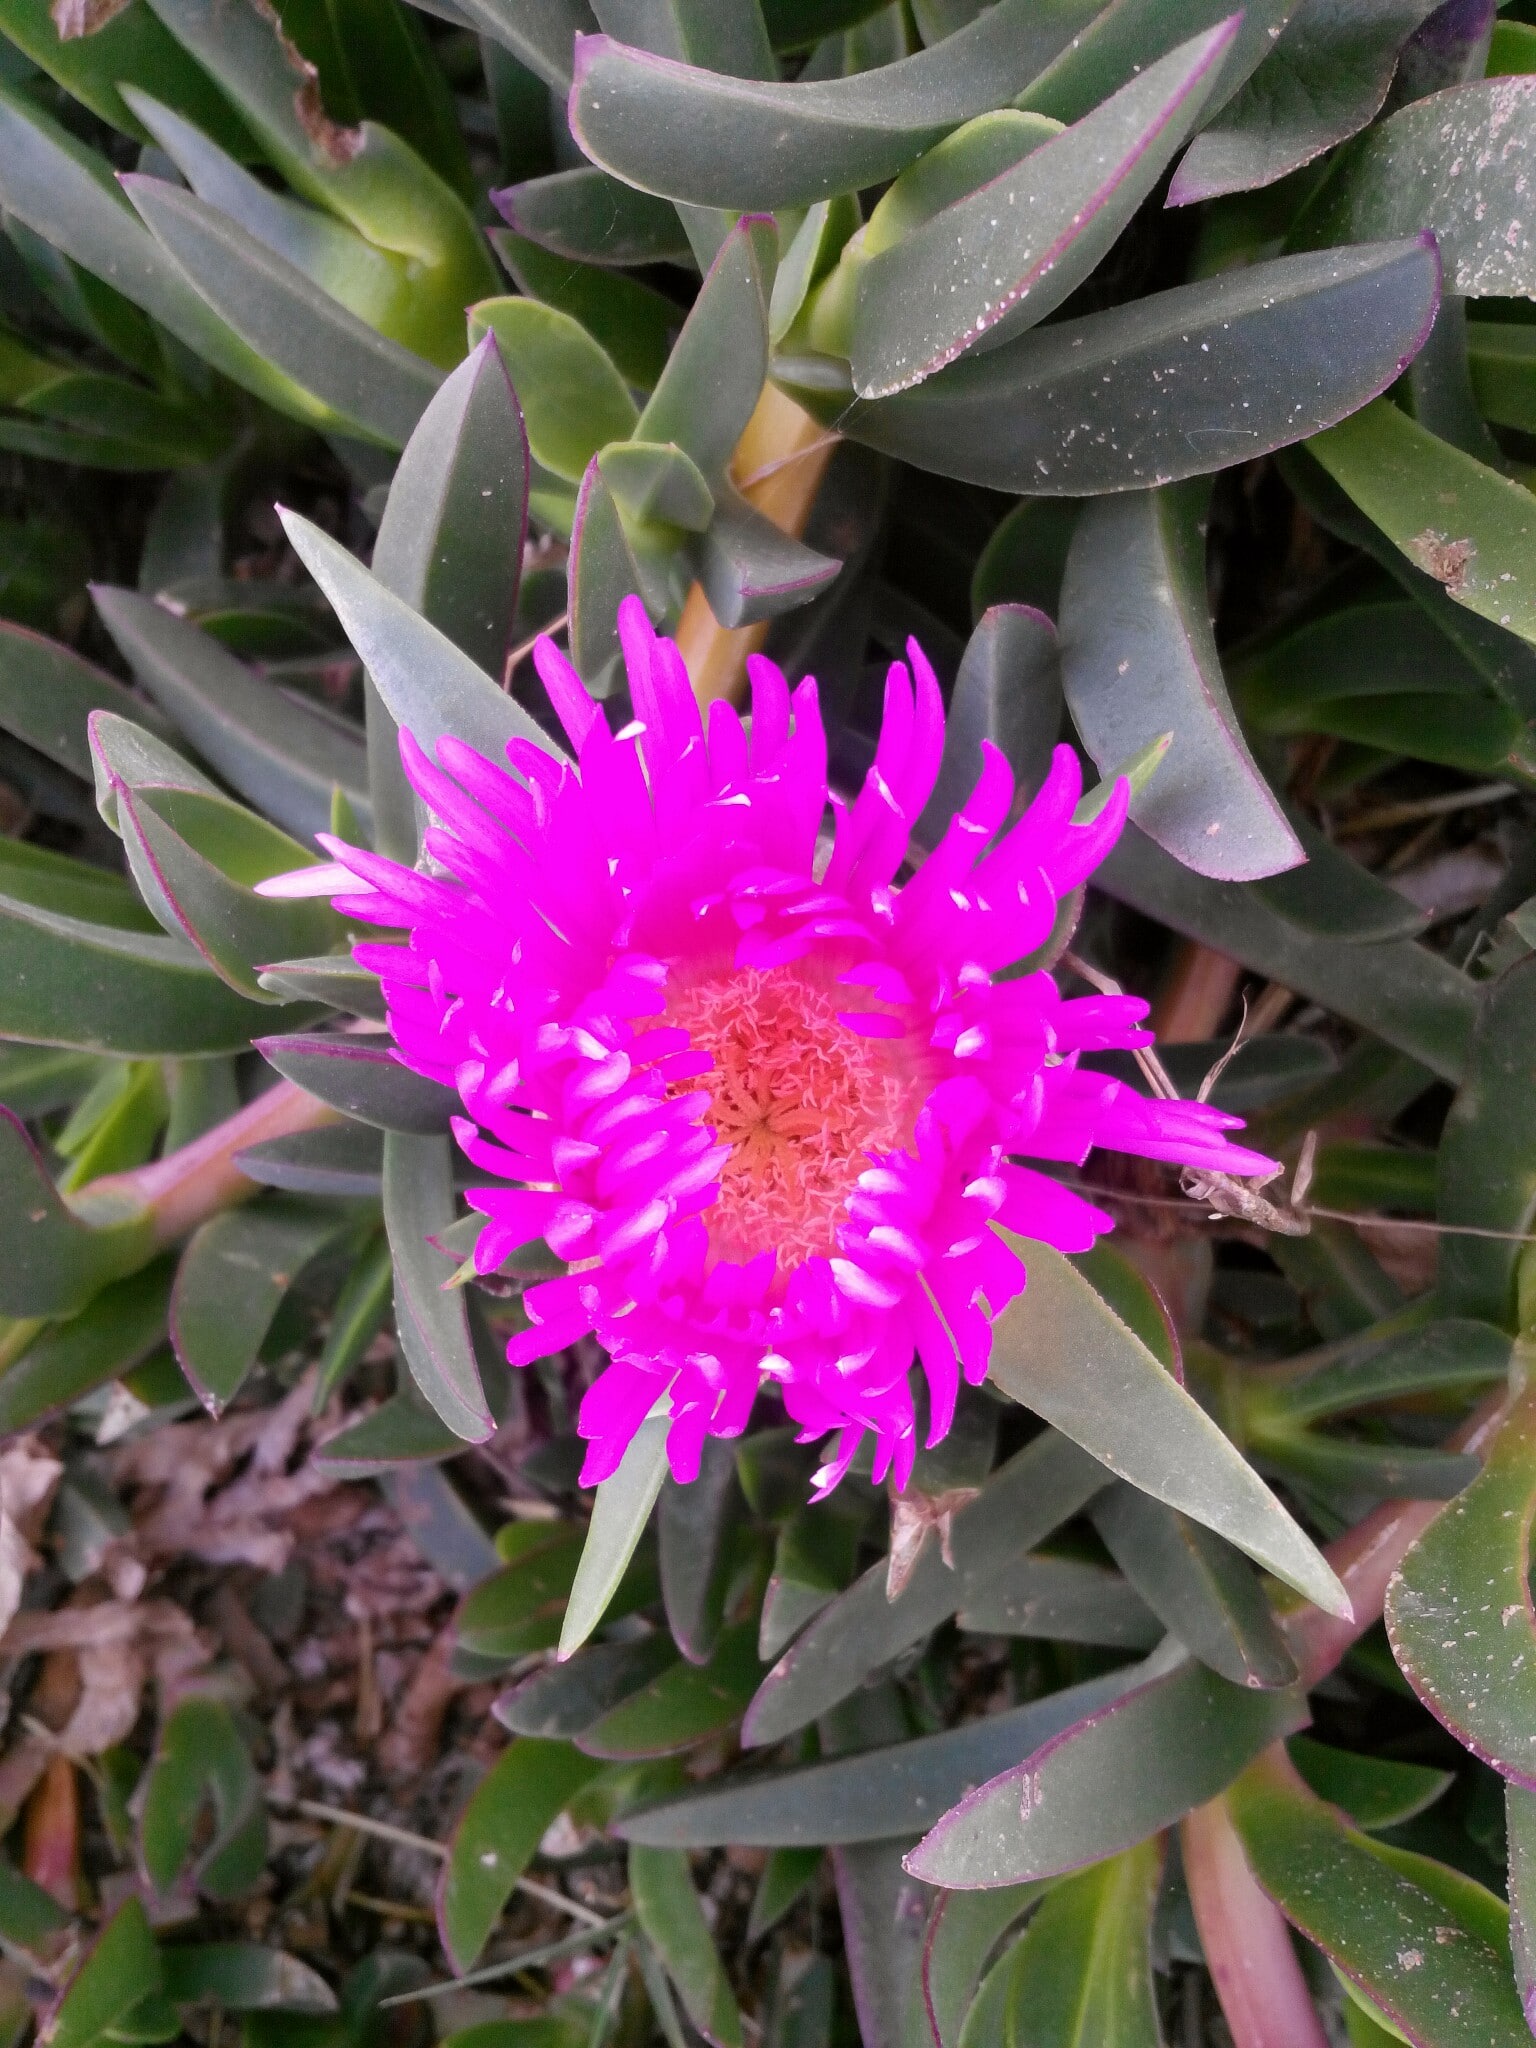 A flower near the beach